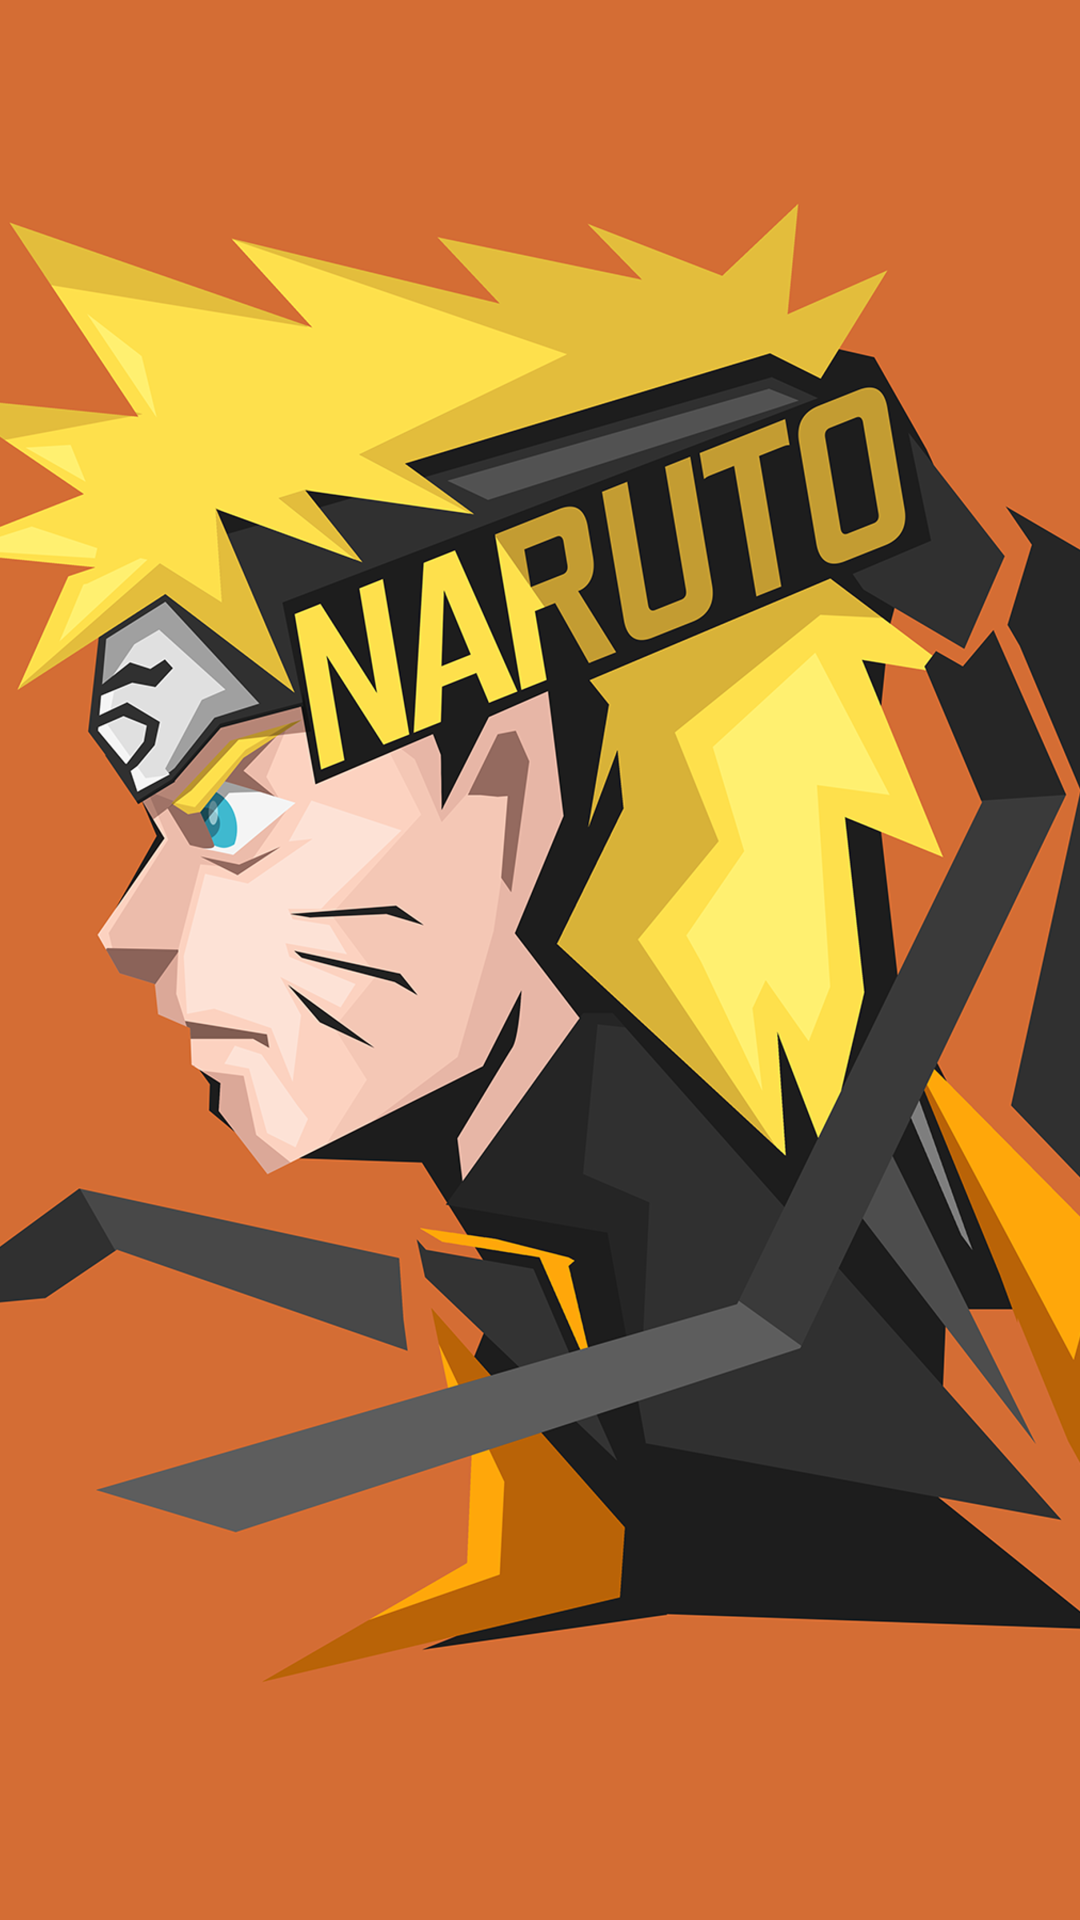 Nếu bạn là fan của Naruto Uzumaki, hãy xem hình ảnh đầy sức sáng tạo của BossLogic với nhân vật này. Chắc chắn bạn sẽ thích bộ sưu tập ảnh này!